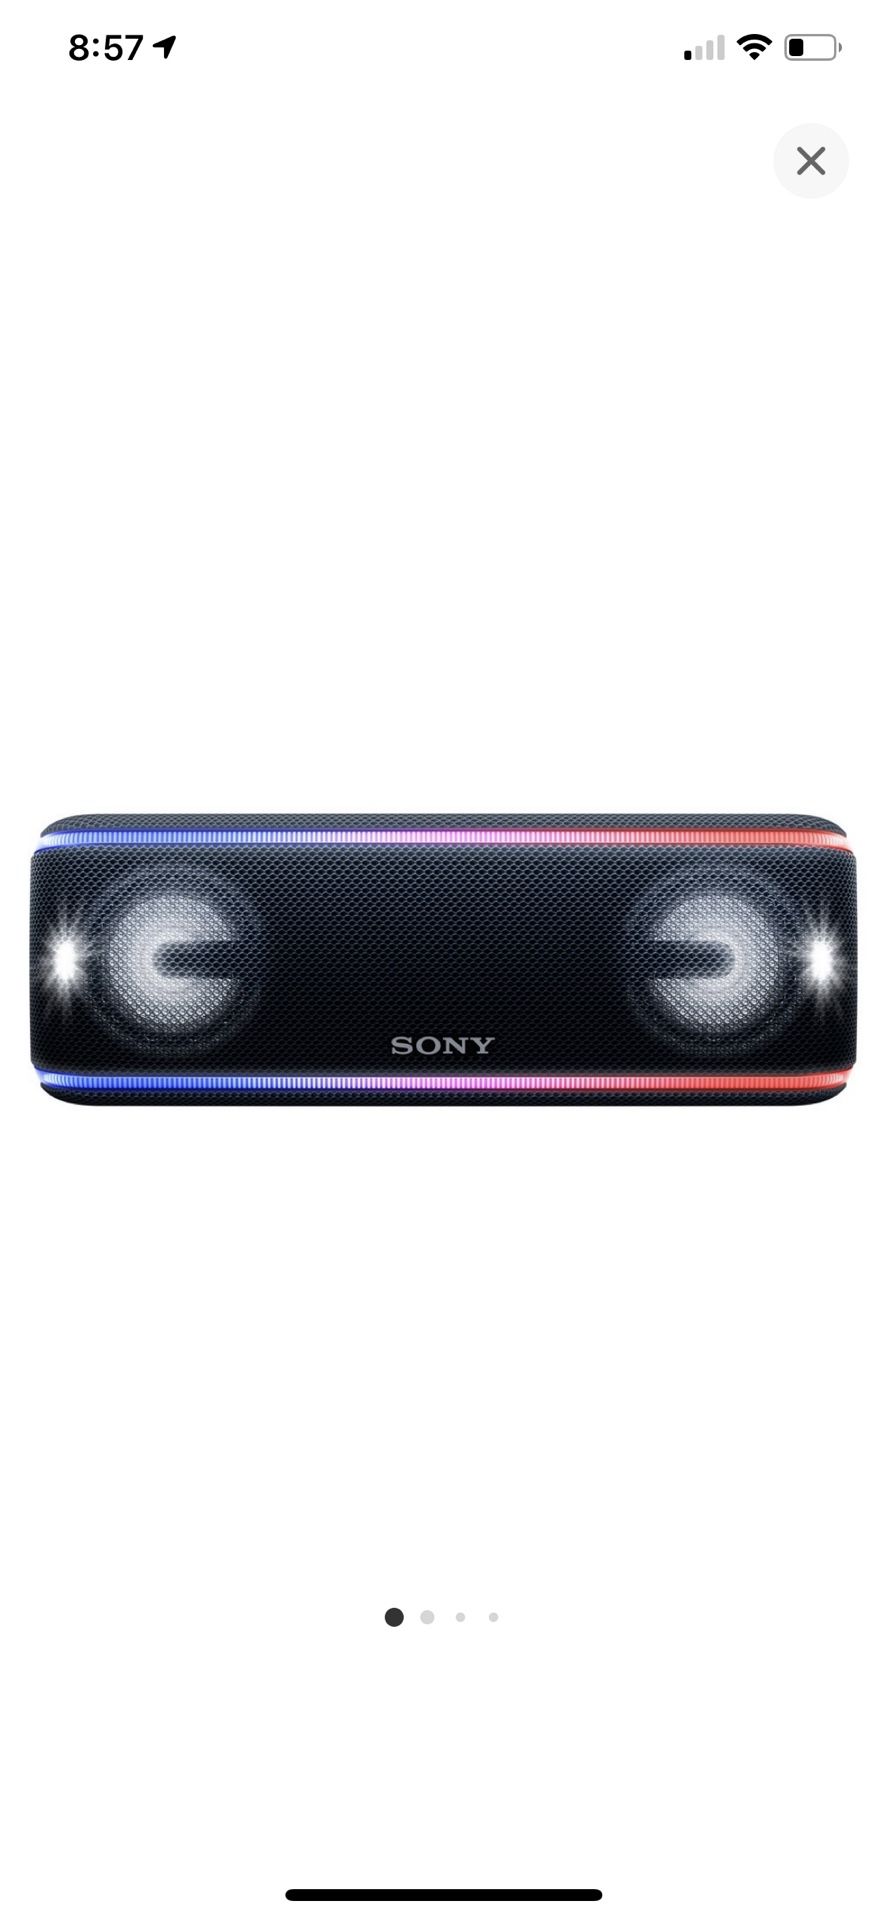 Sony speaker